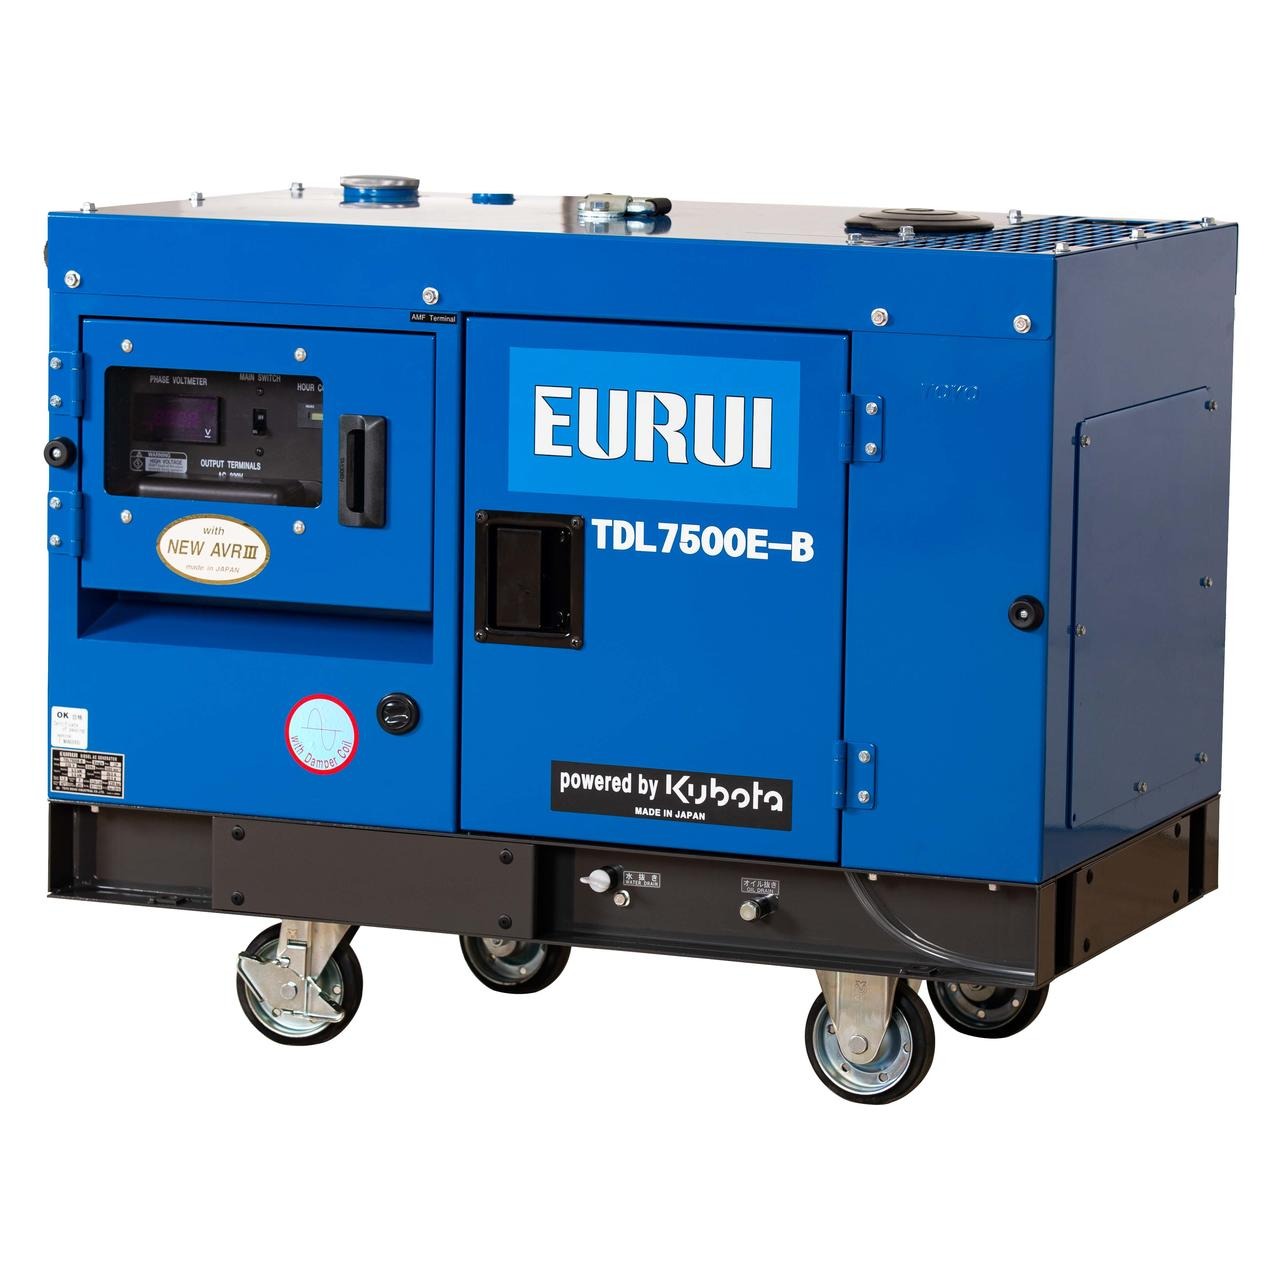 日本东洋EURUI 进口柴油发电机 日本东洋柴油静音发电机 5.6KW发电机 TDL7500E-B